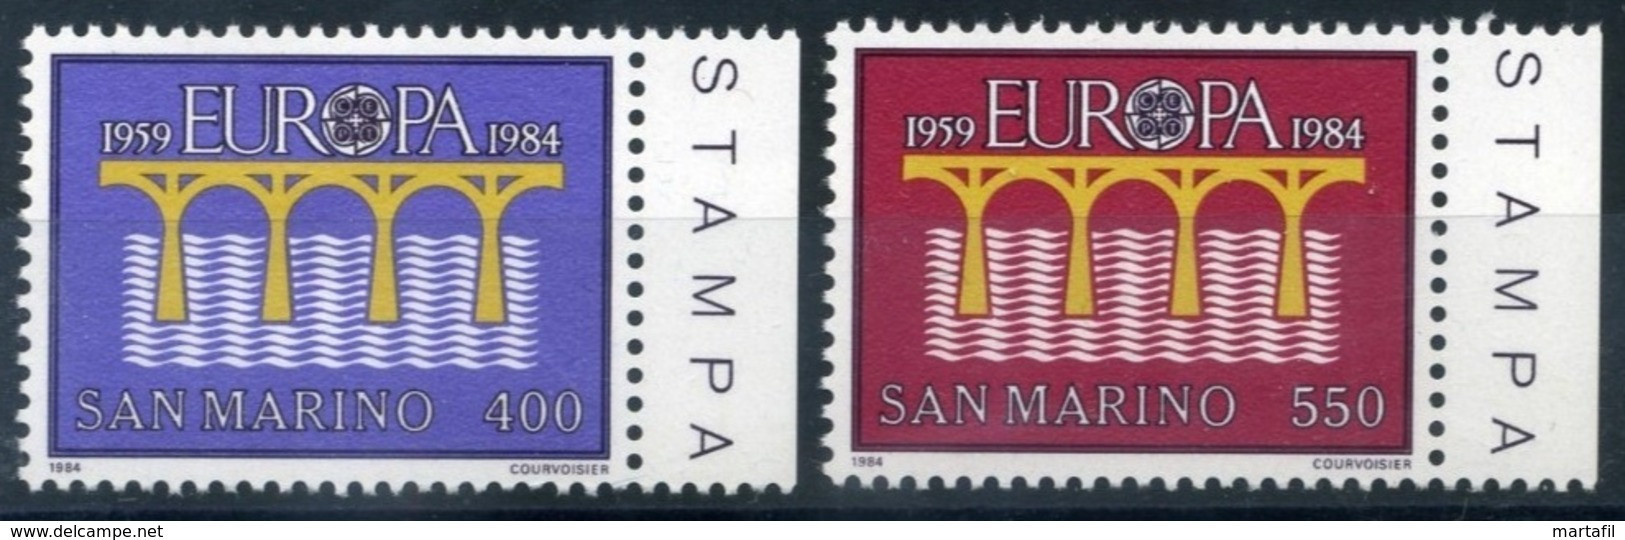 1984 SAN MARINO SET MNH ** Europa - Neufs